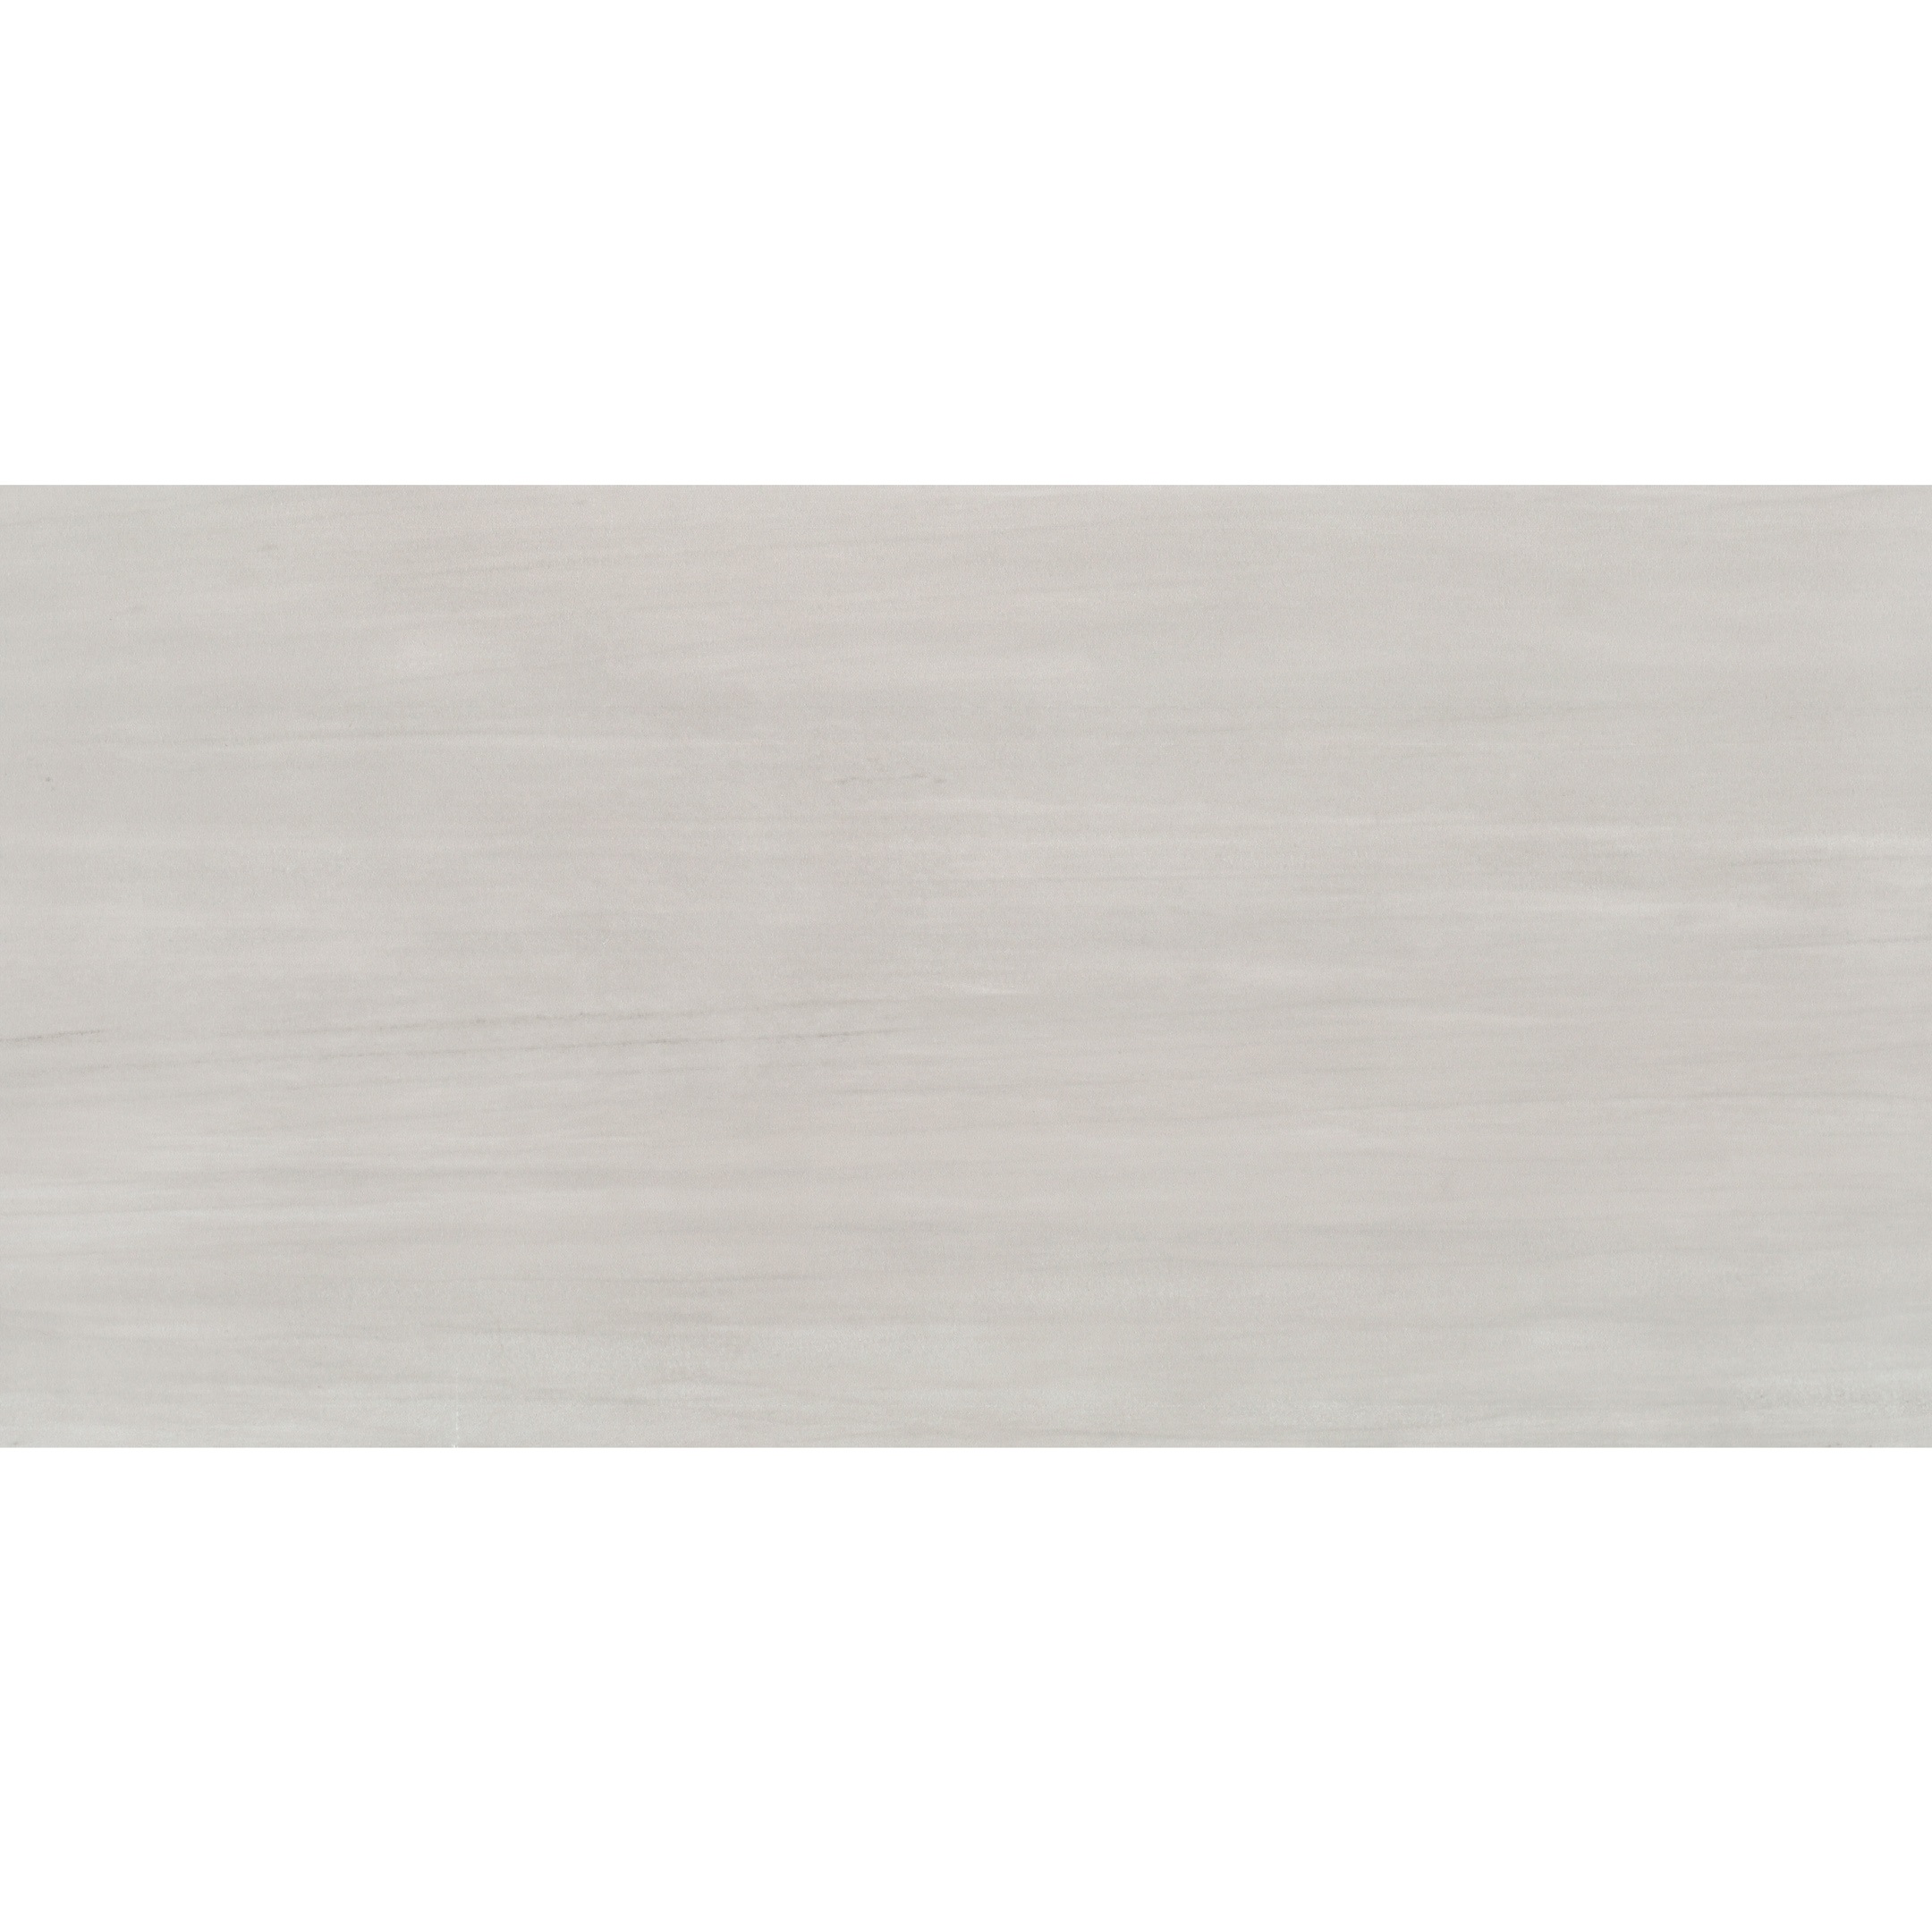 Плитка облицовочная Cersanit Grey Shades серая 598x298x9 мм (7 шт.=1,25 кв.м)